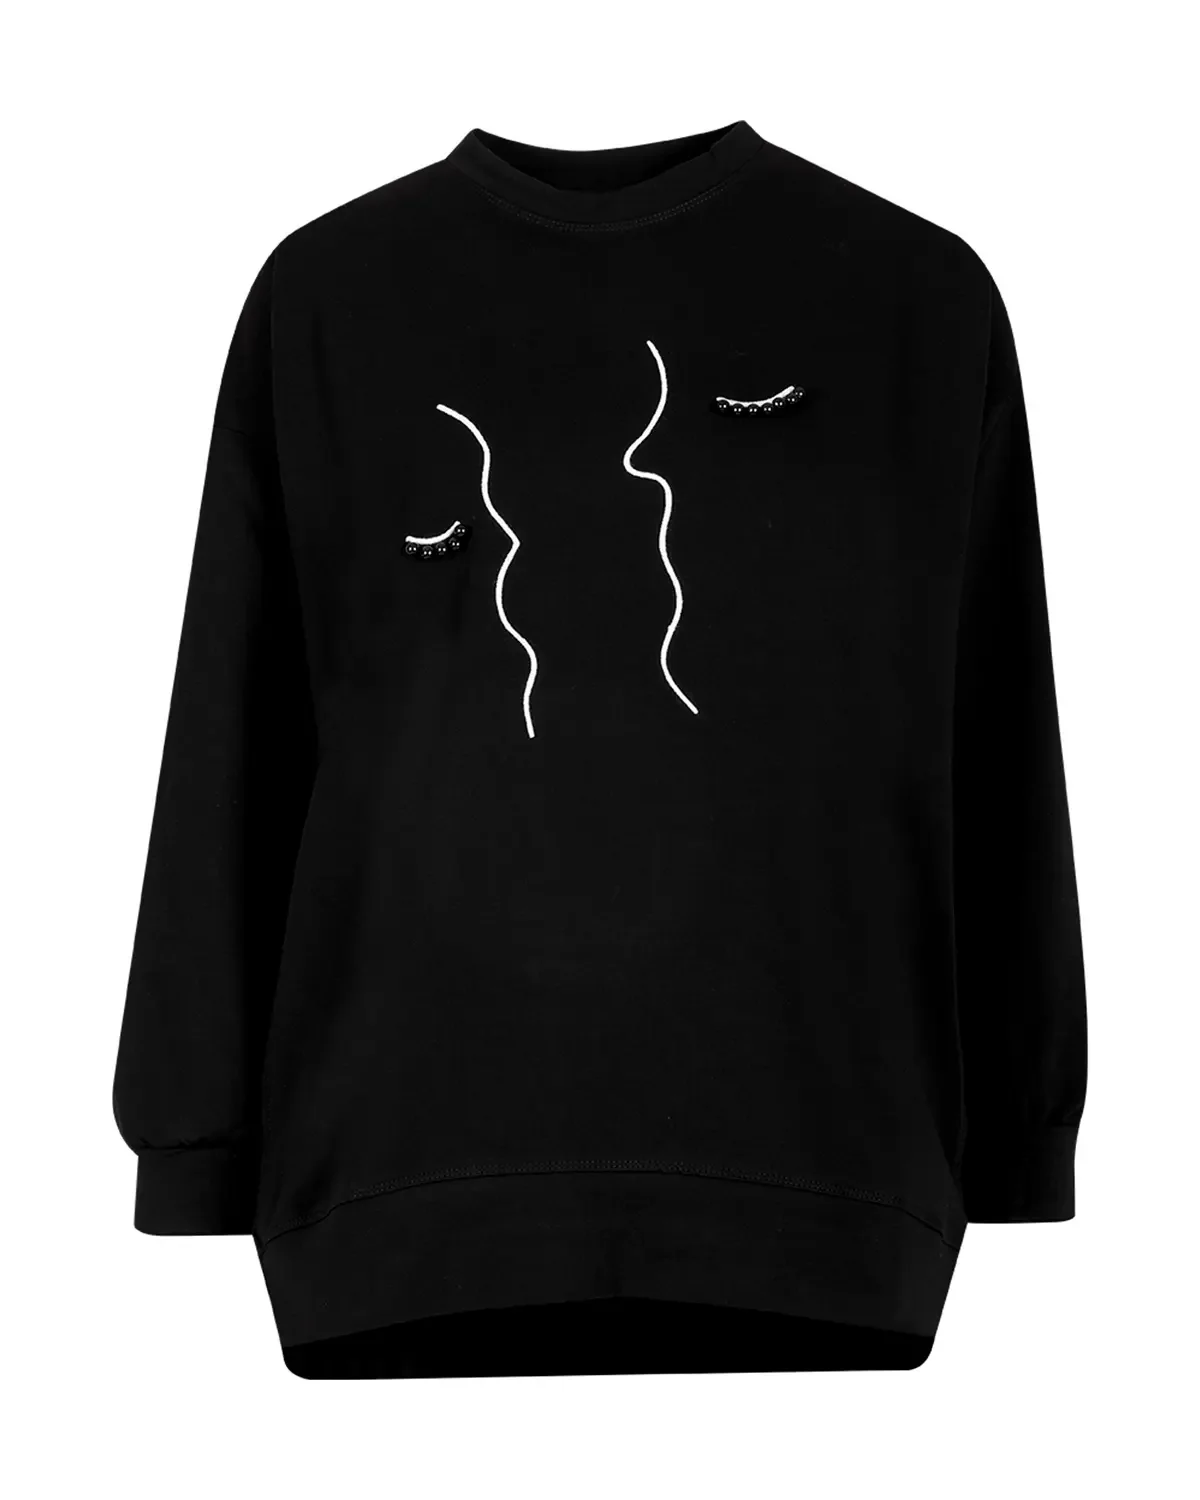 Baskılı Boncuk İşlemeli Sweatshirt-Siyah - 8